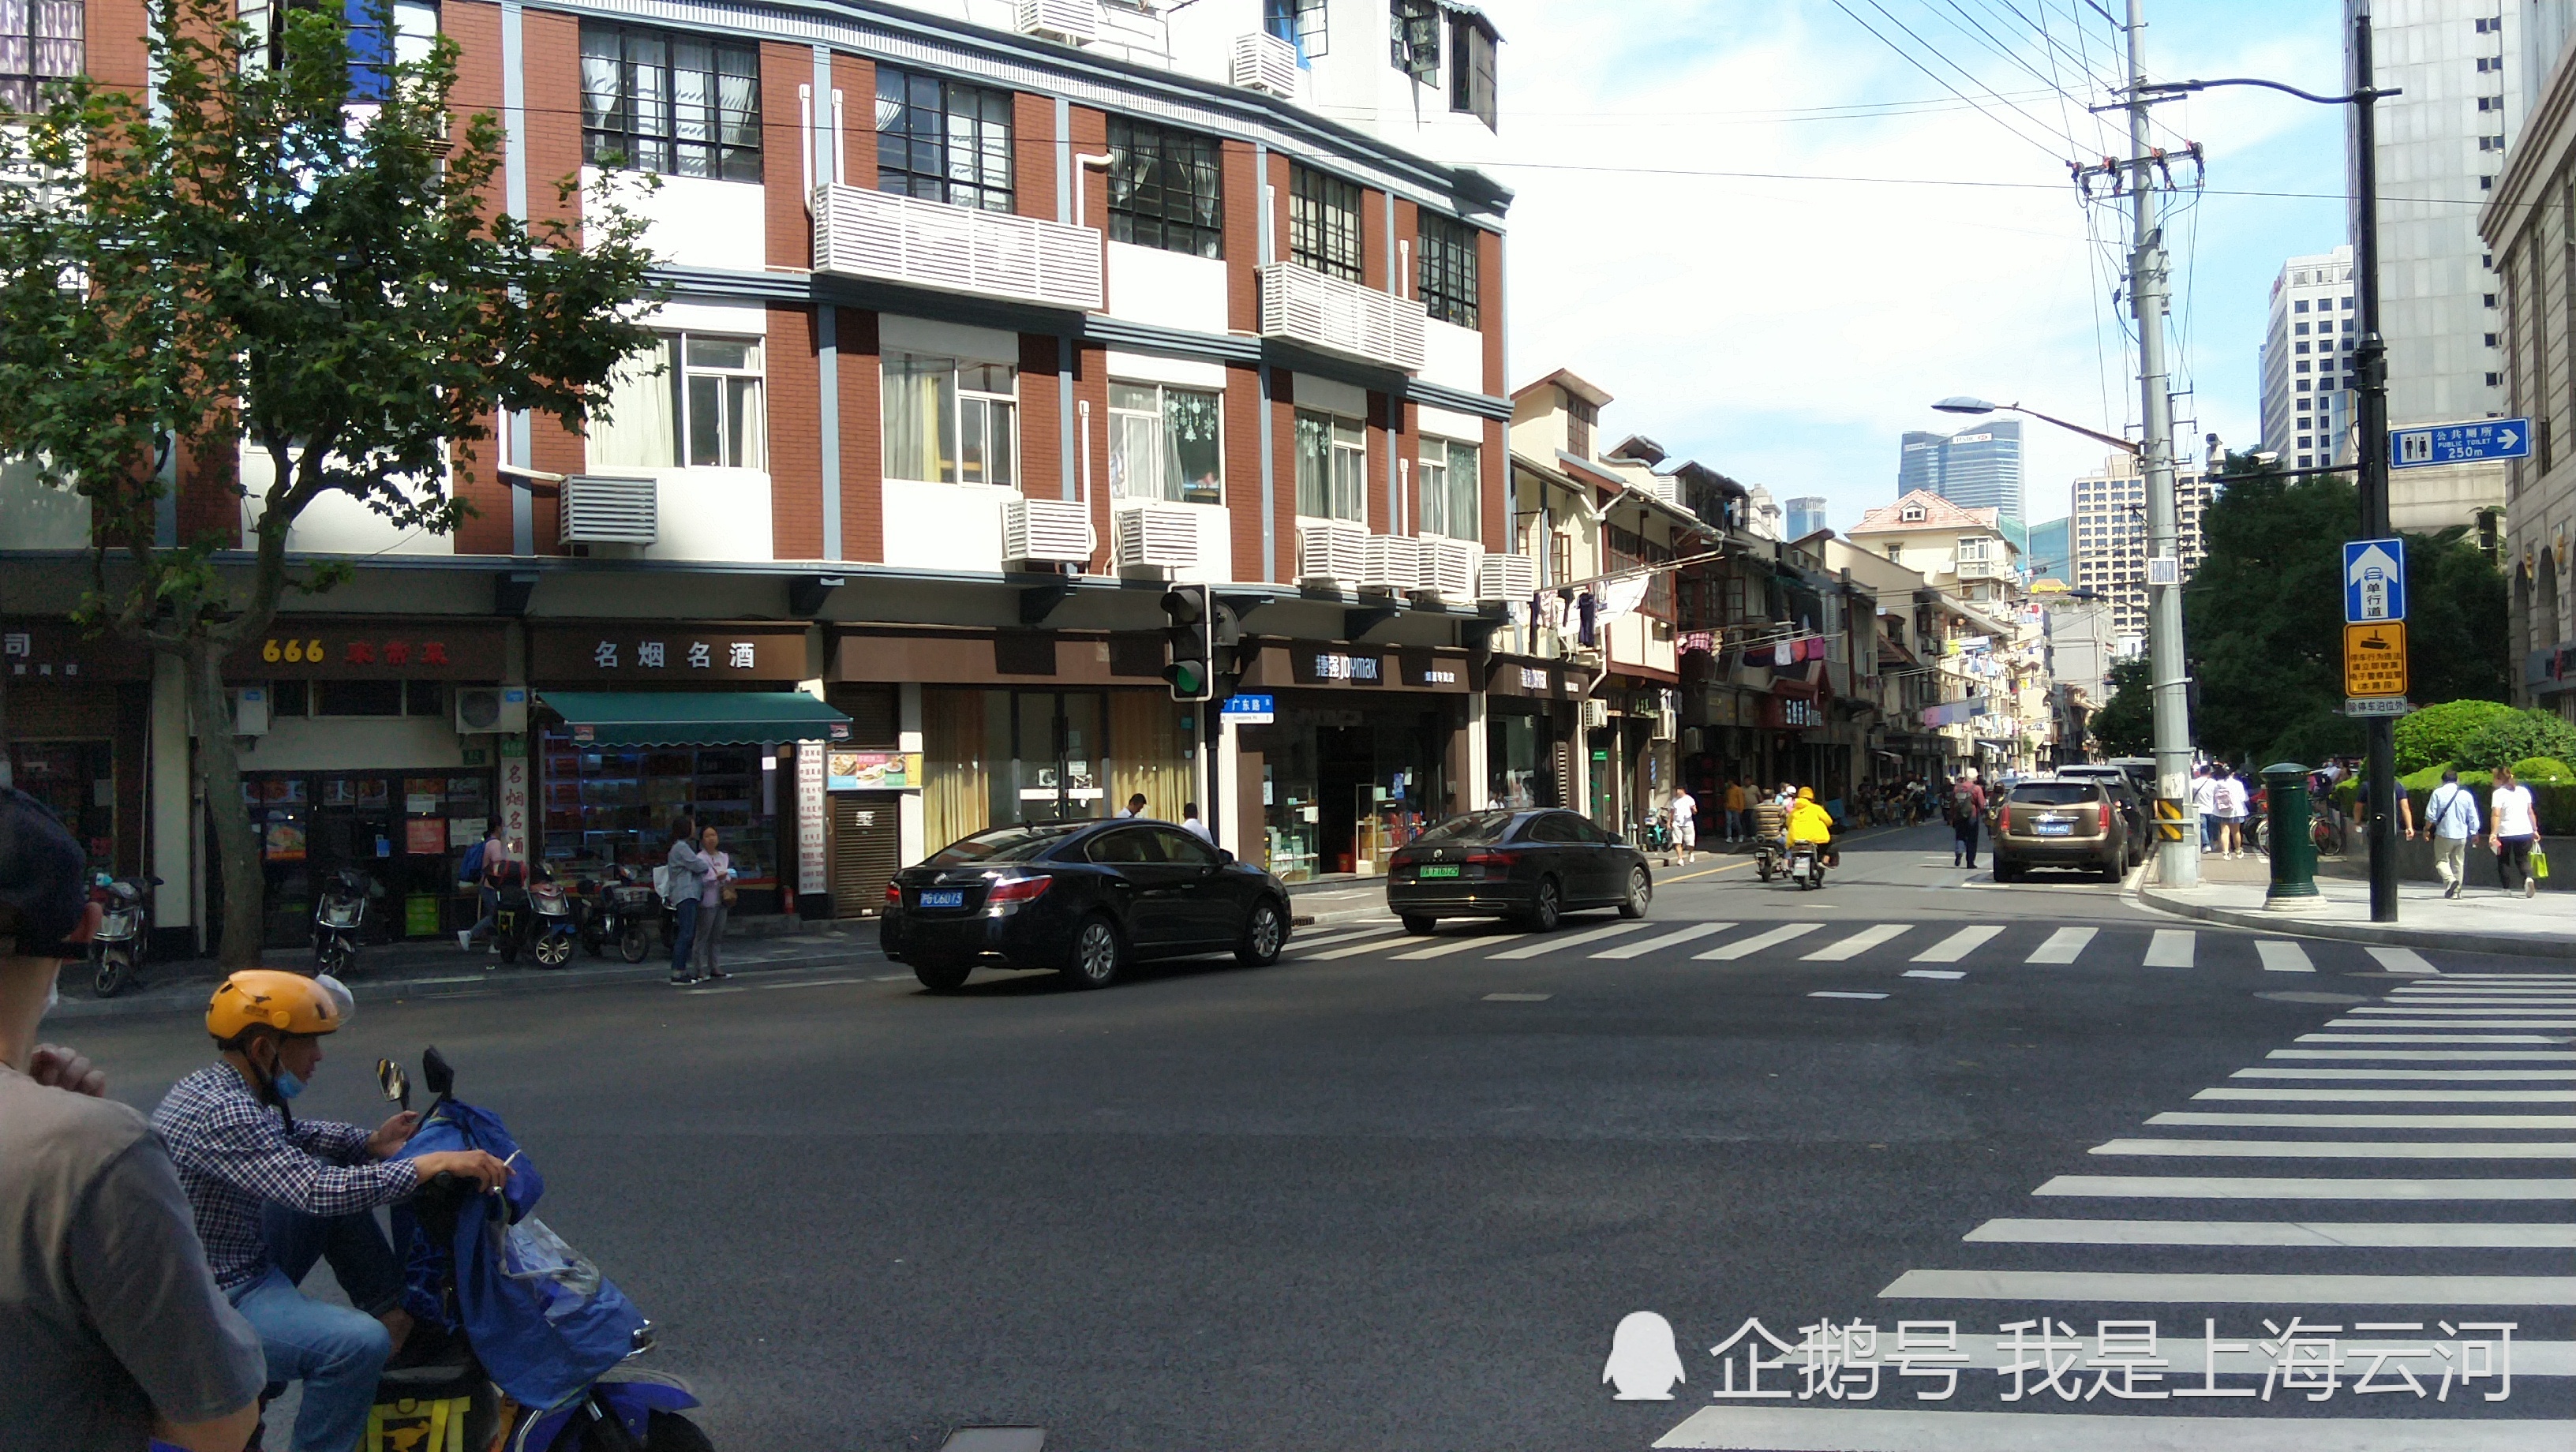 广东路还是很有上海市井气息,老旧的住房,众多餐饮店和小旅馆